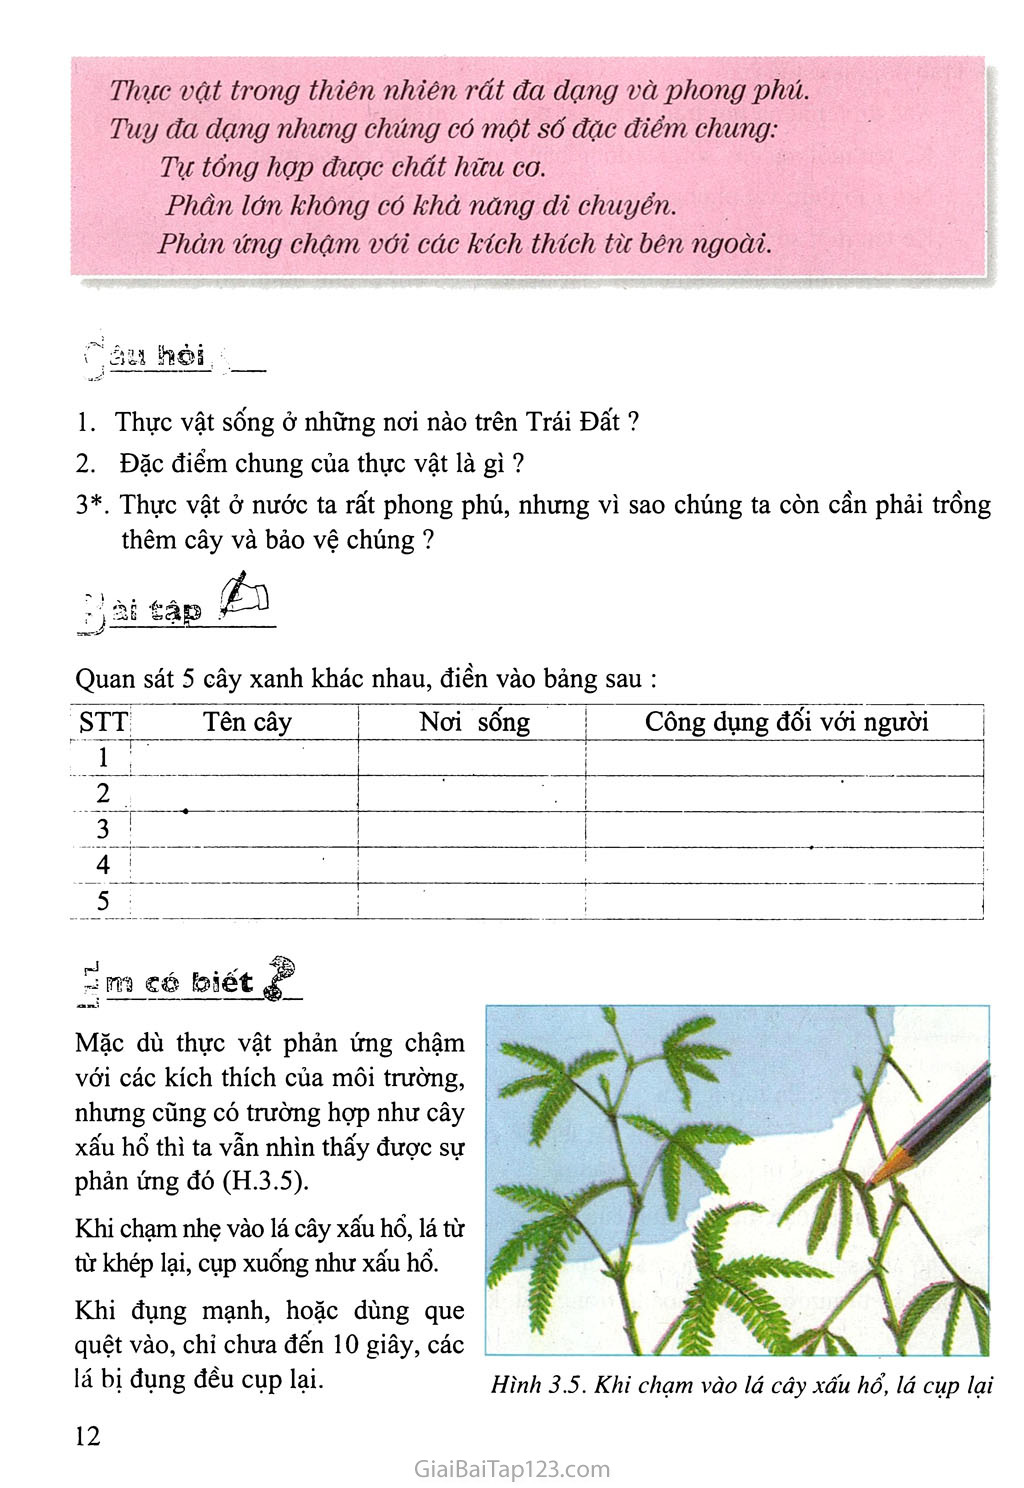 Bài 3: Đặc điểm chung của thực vật trang 3